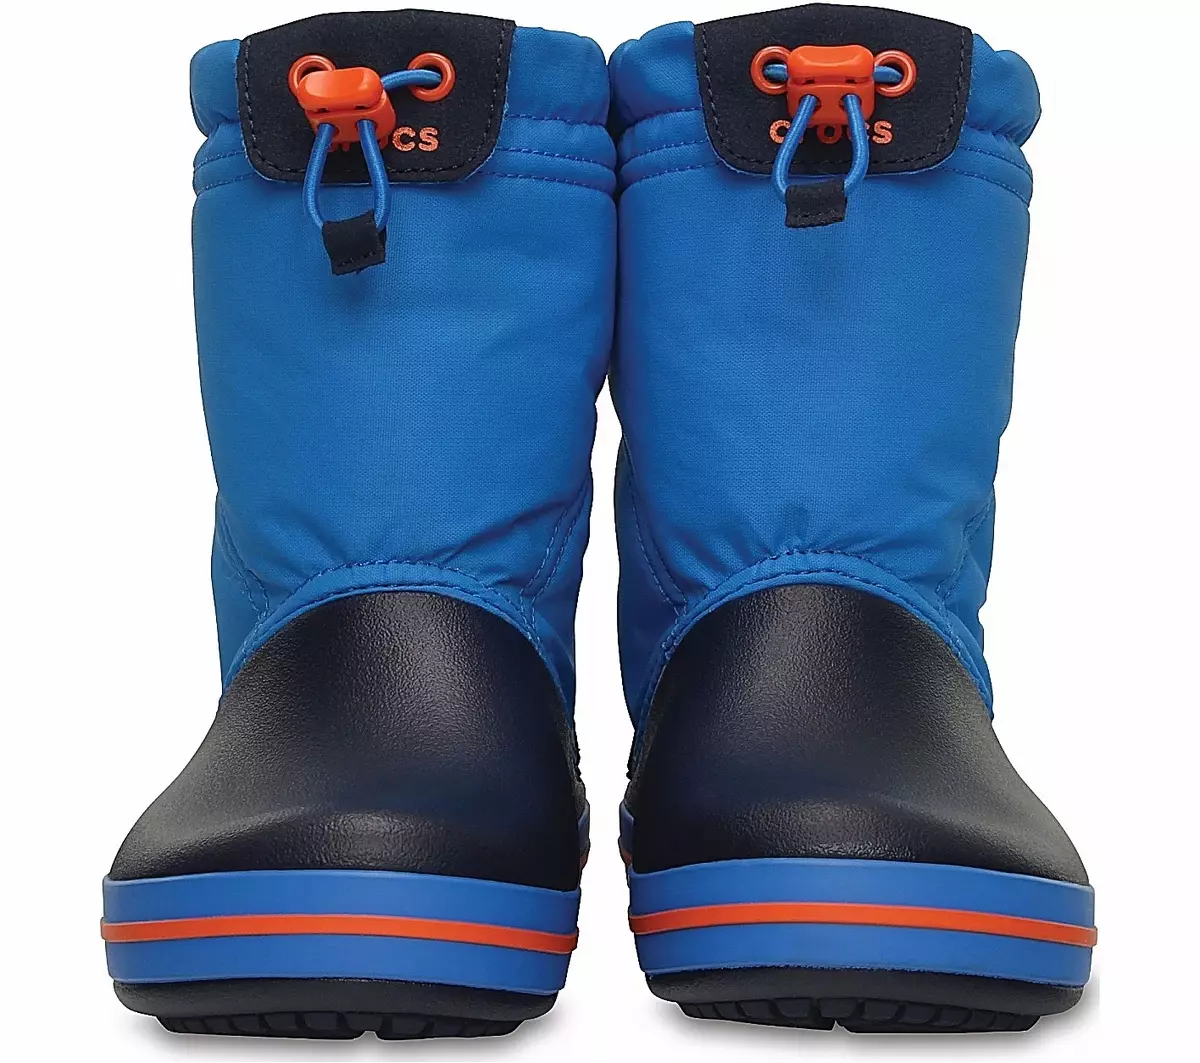 SnowuButhes（58写真）：それは何ですか？靴のための適切な天候と温度。スノウバッグからの違いの違いは何ですか？ 1667_43